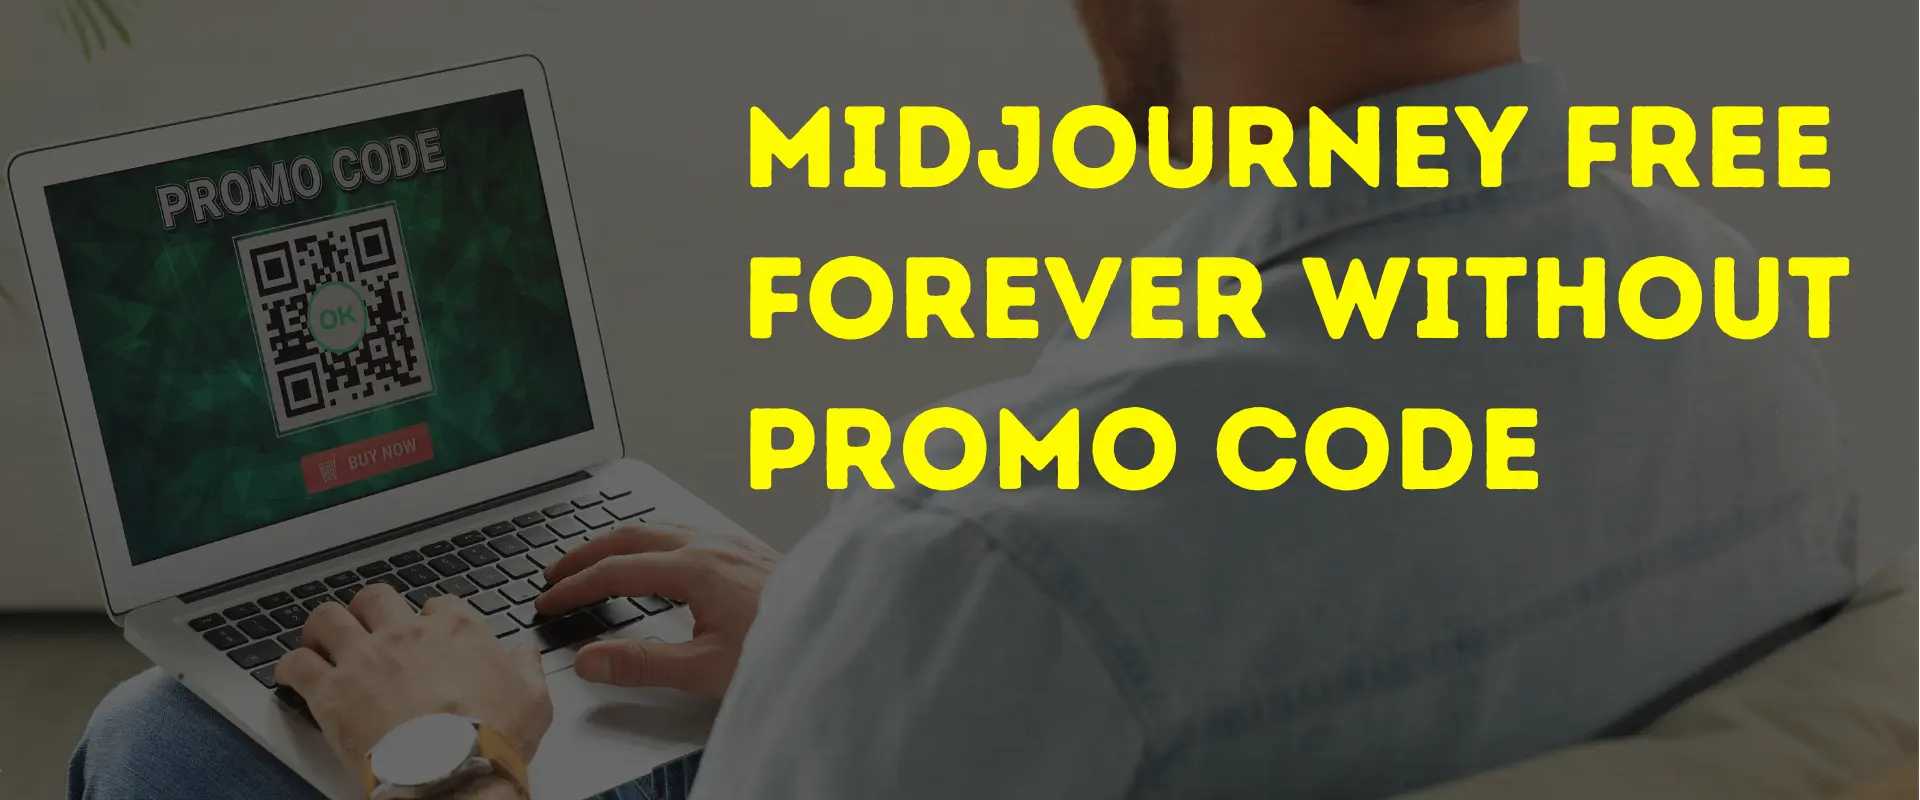 midjourney promo code